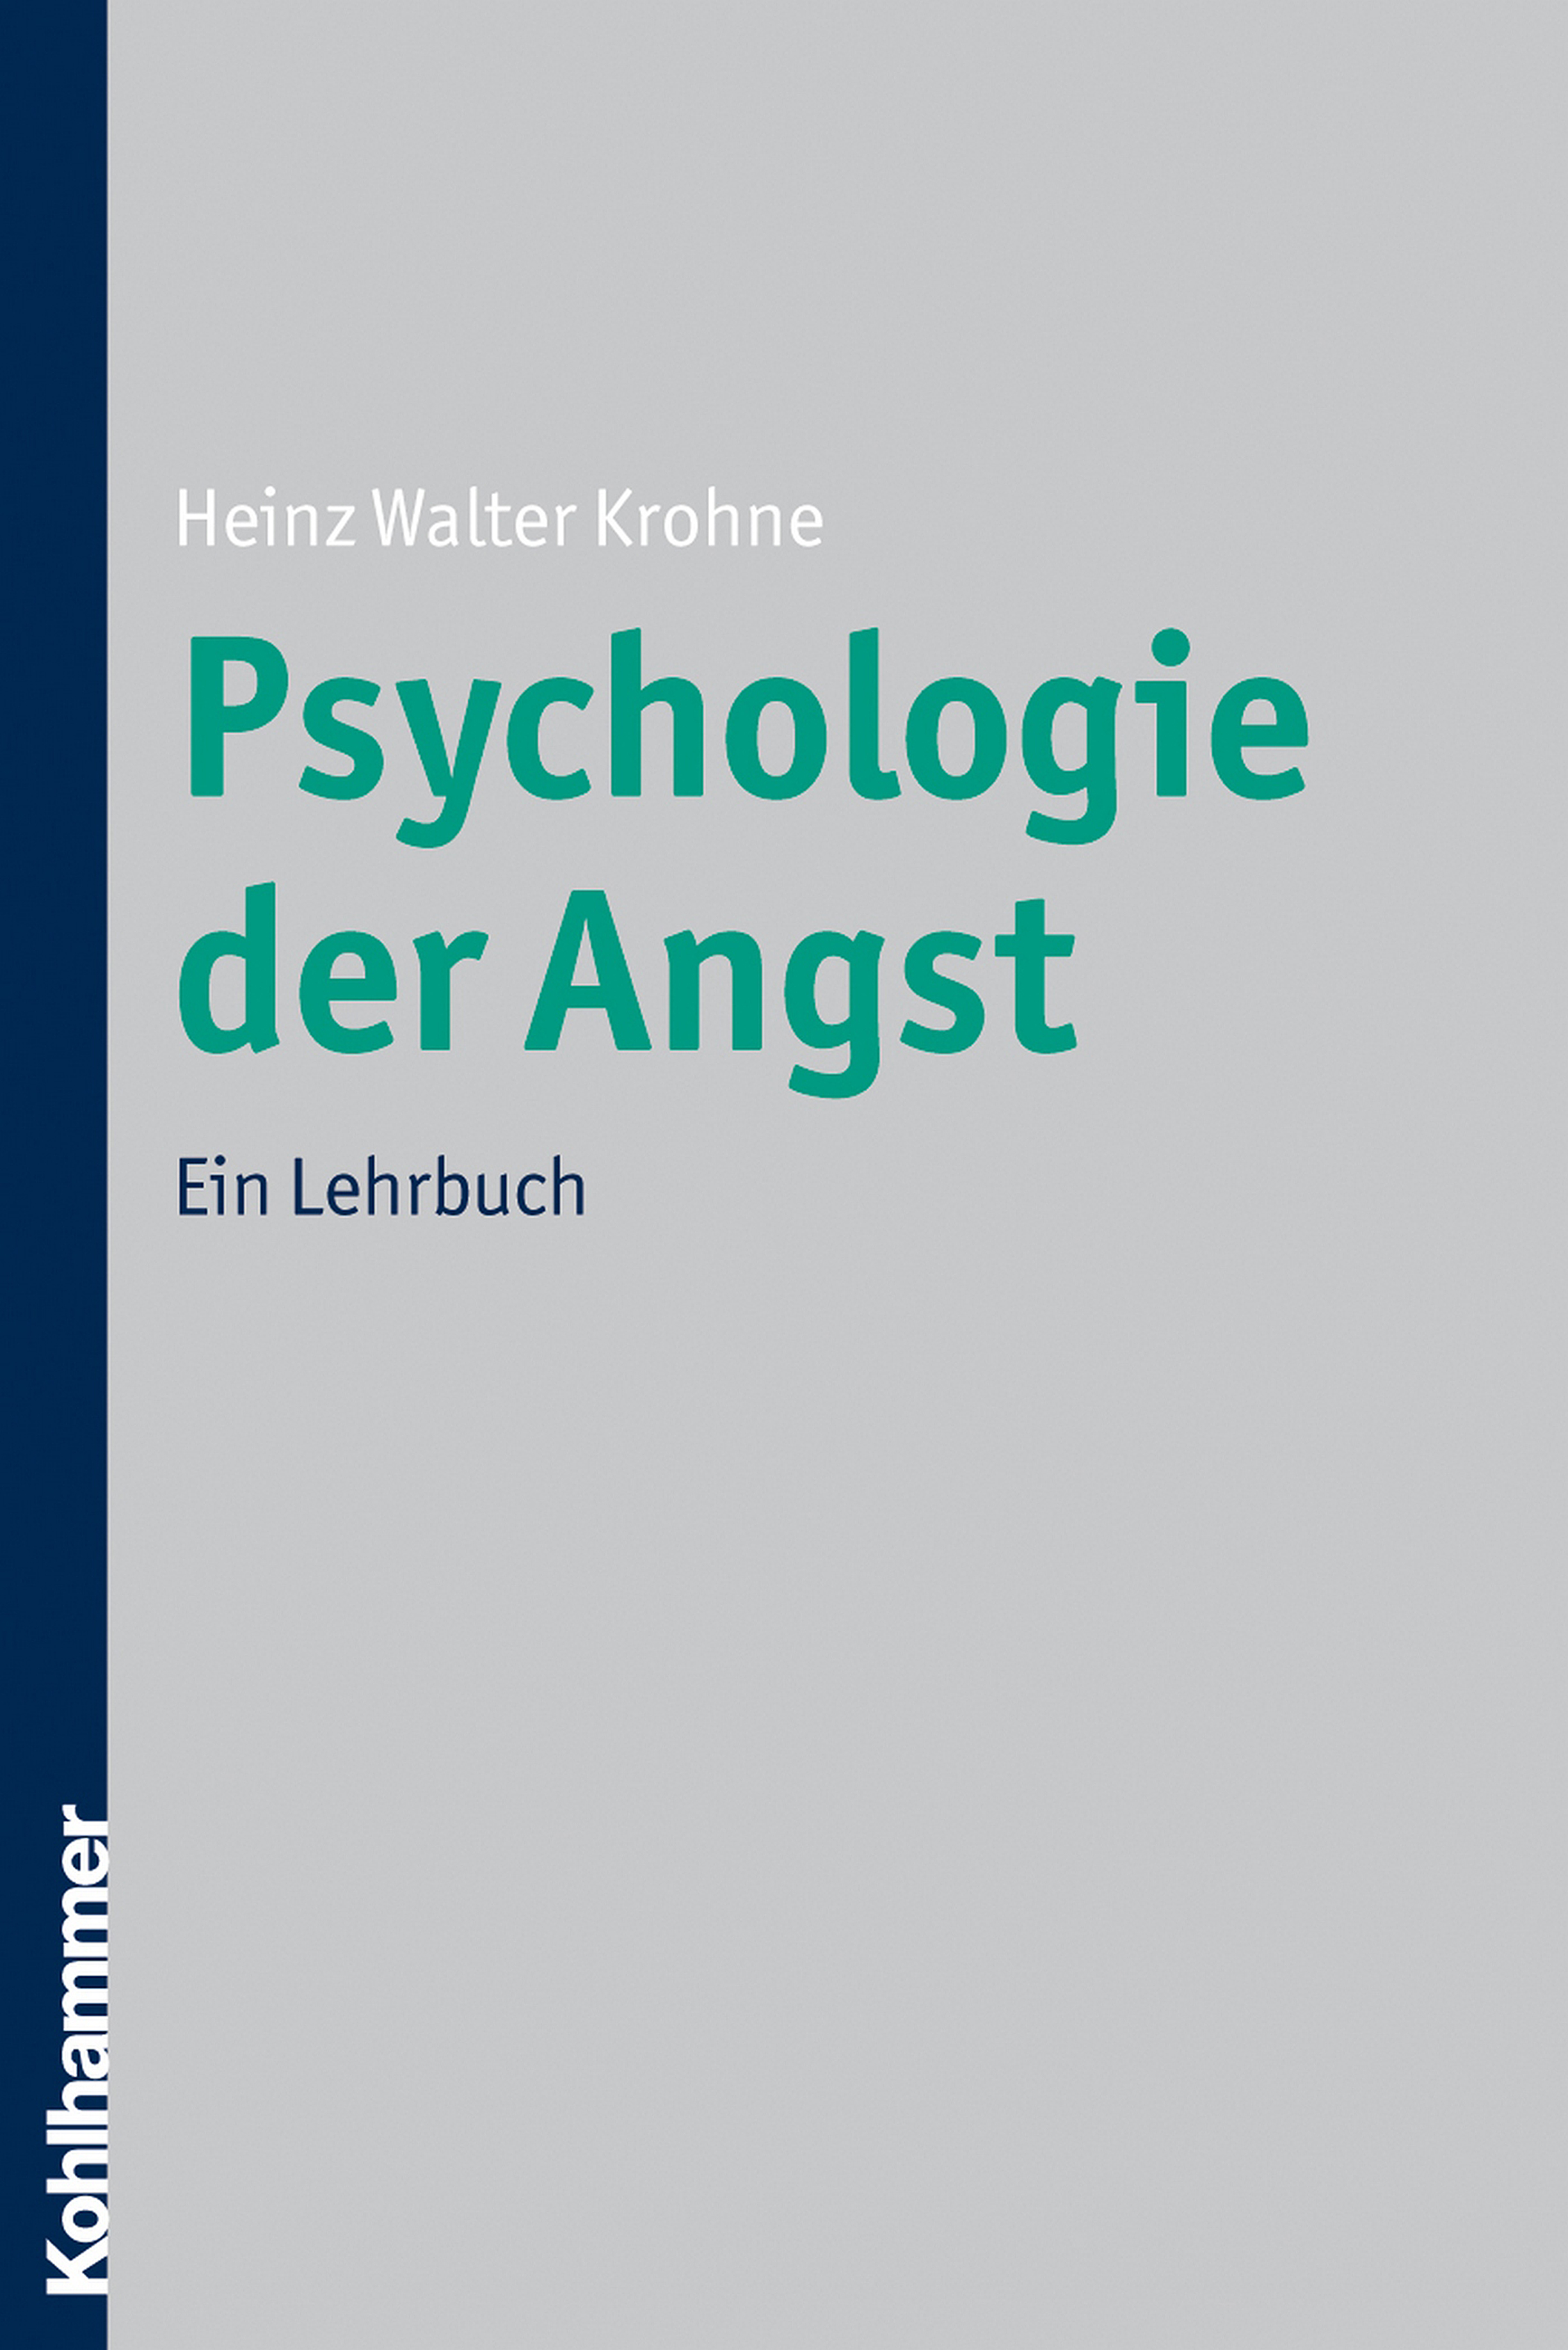 Heinz Walter Krohne / Psychologie der Angst - Bild 1 von 1